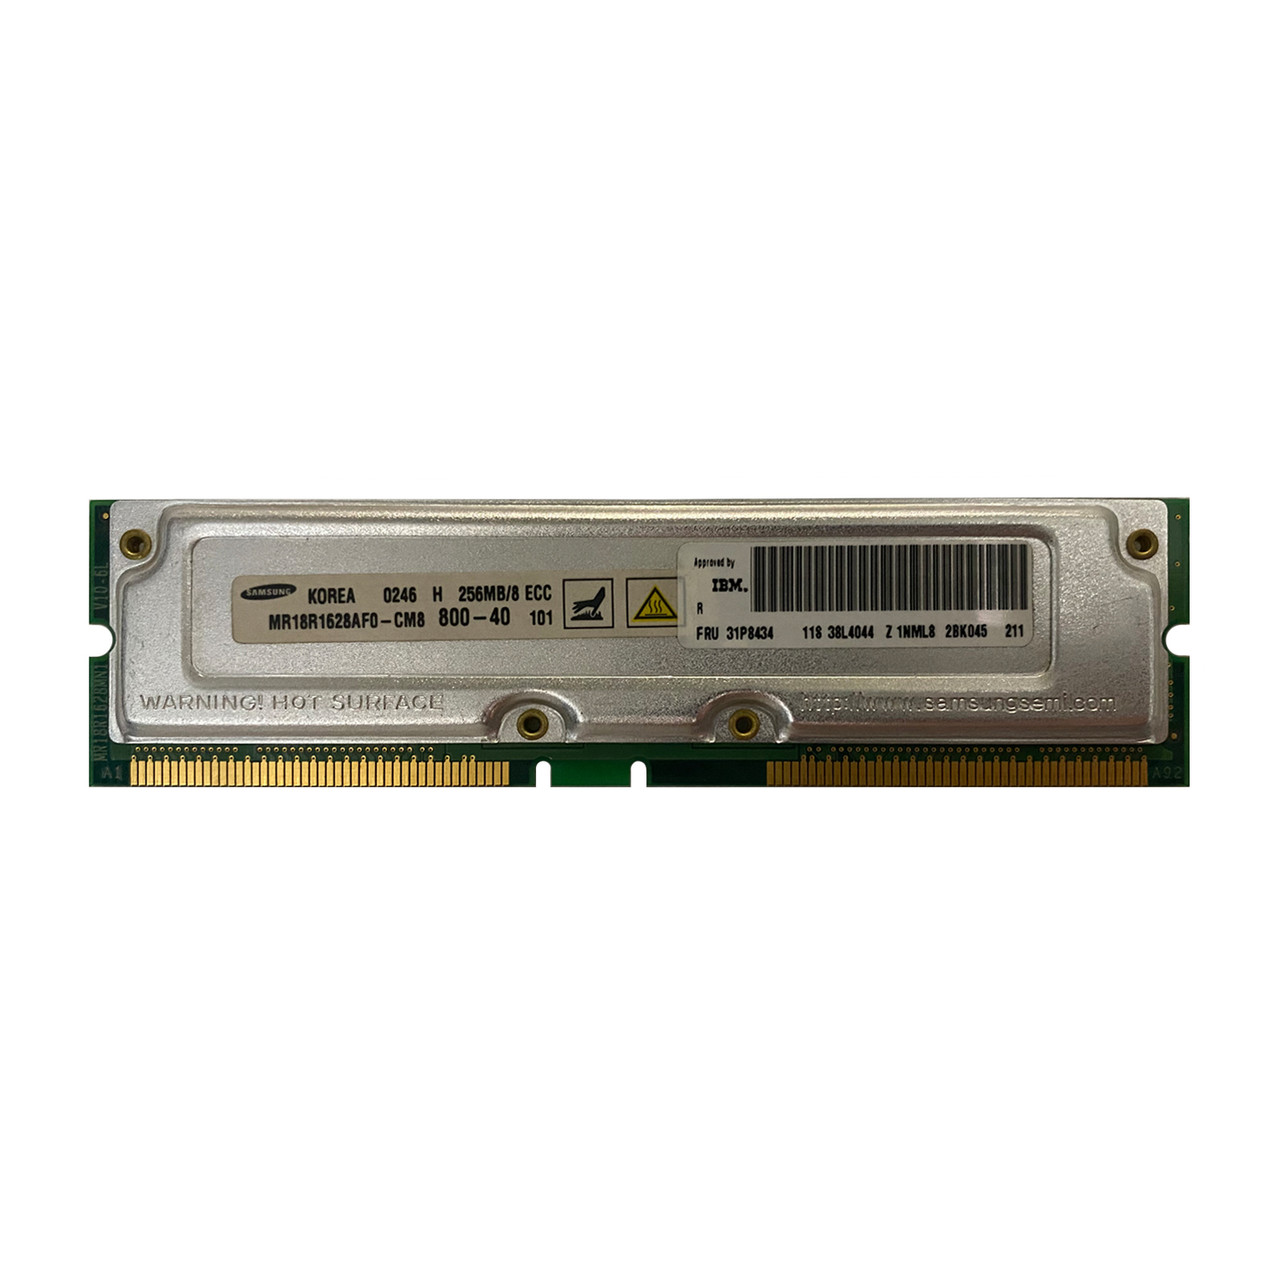 IBM 31P8434 256MB PC-800 DDR Memory Module 38L4044